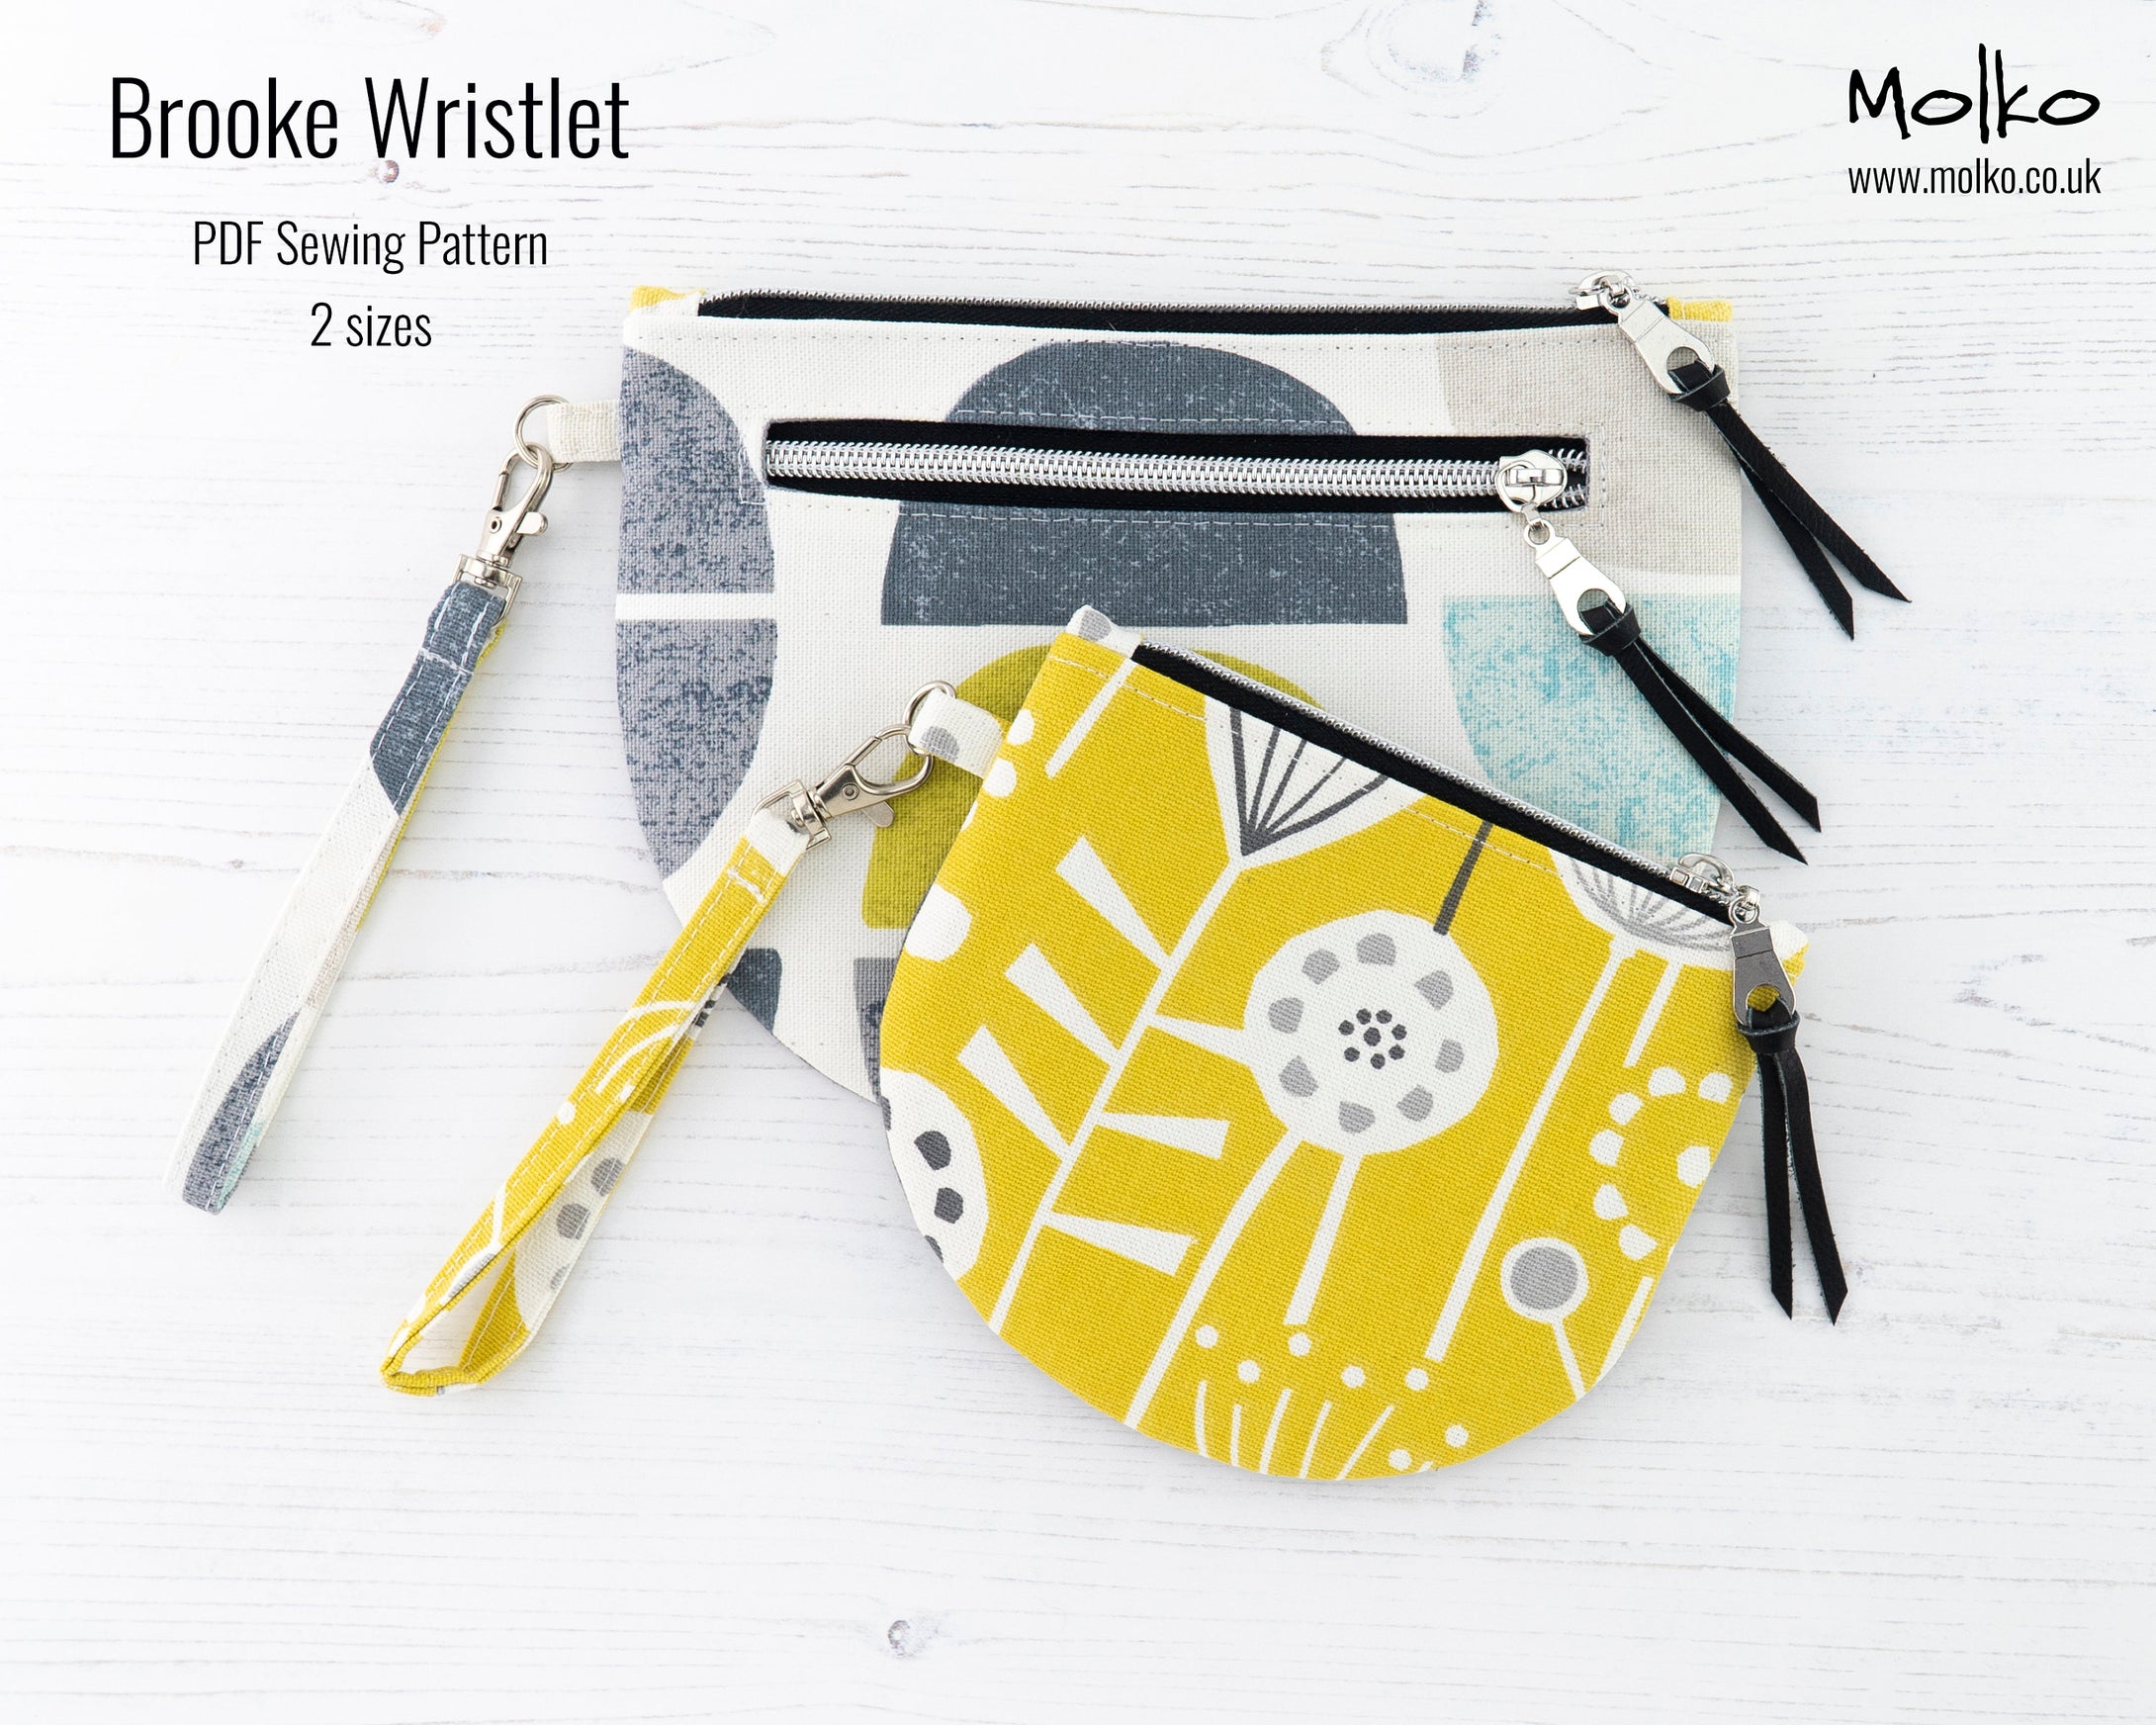 Brooke wristlet bag PDF sewing tutorial sewing pattern